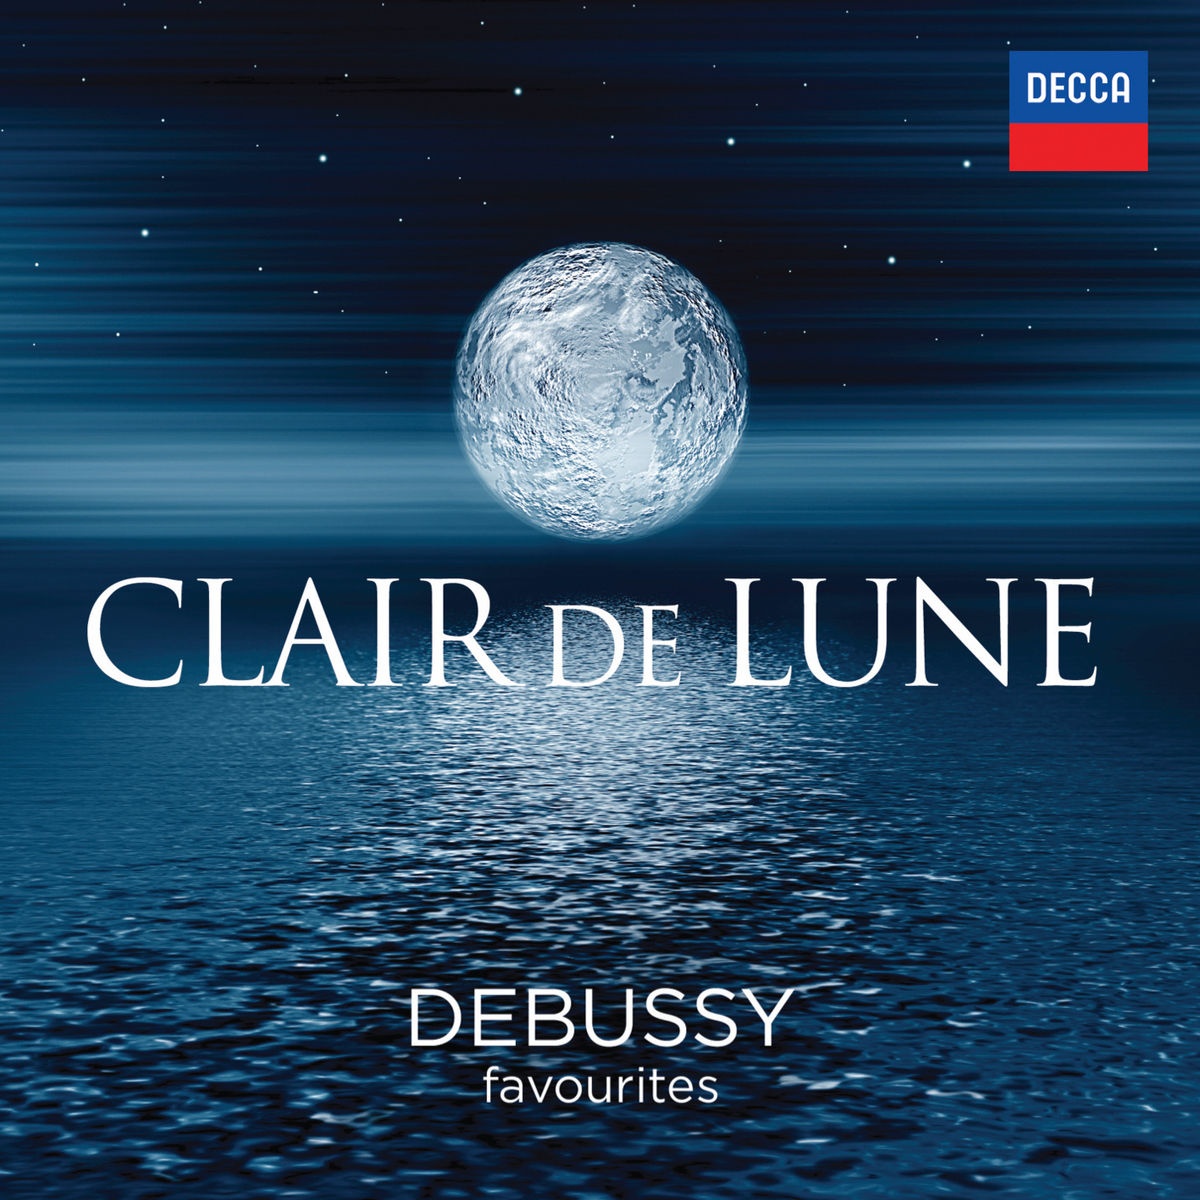 Debussy: La Mer, L.109 - 2. Play of the Waves (Jeux de vagues)